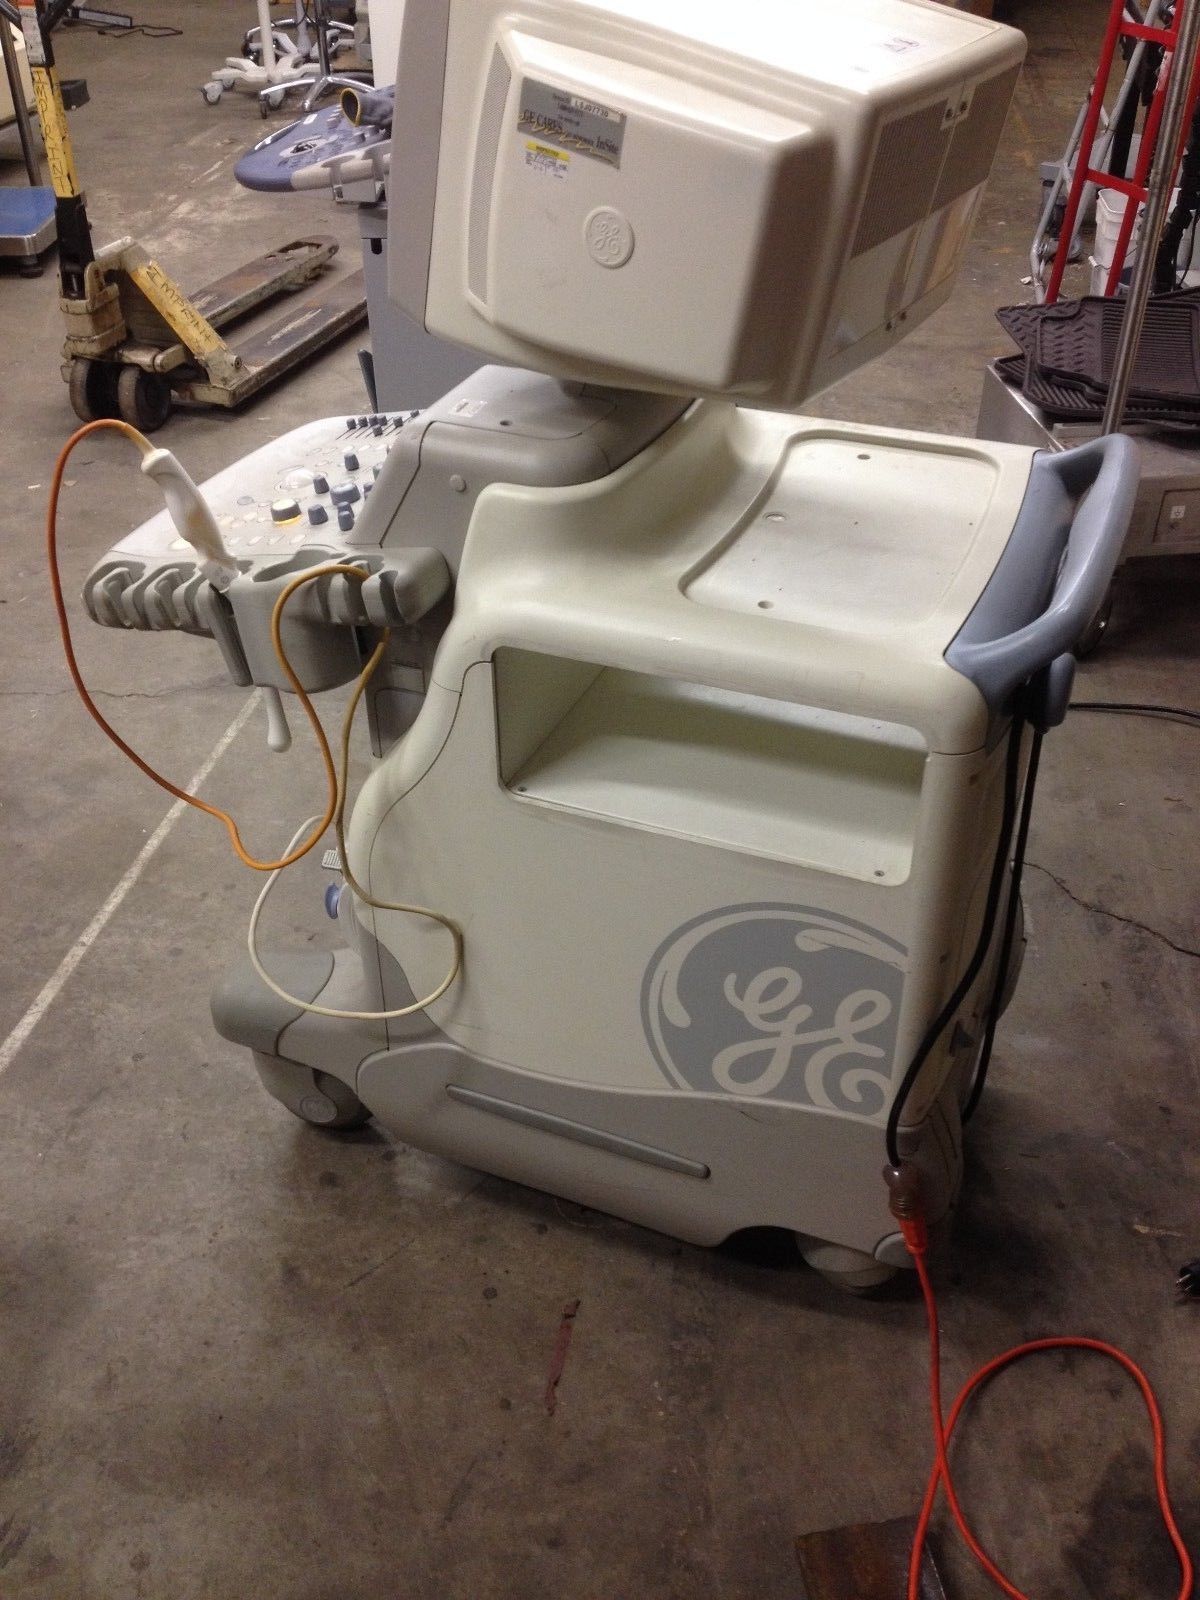 ultrasouund machine that is sitting on the ground